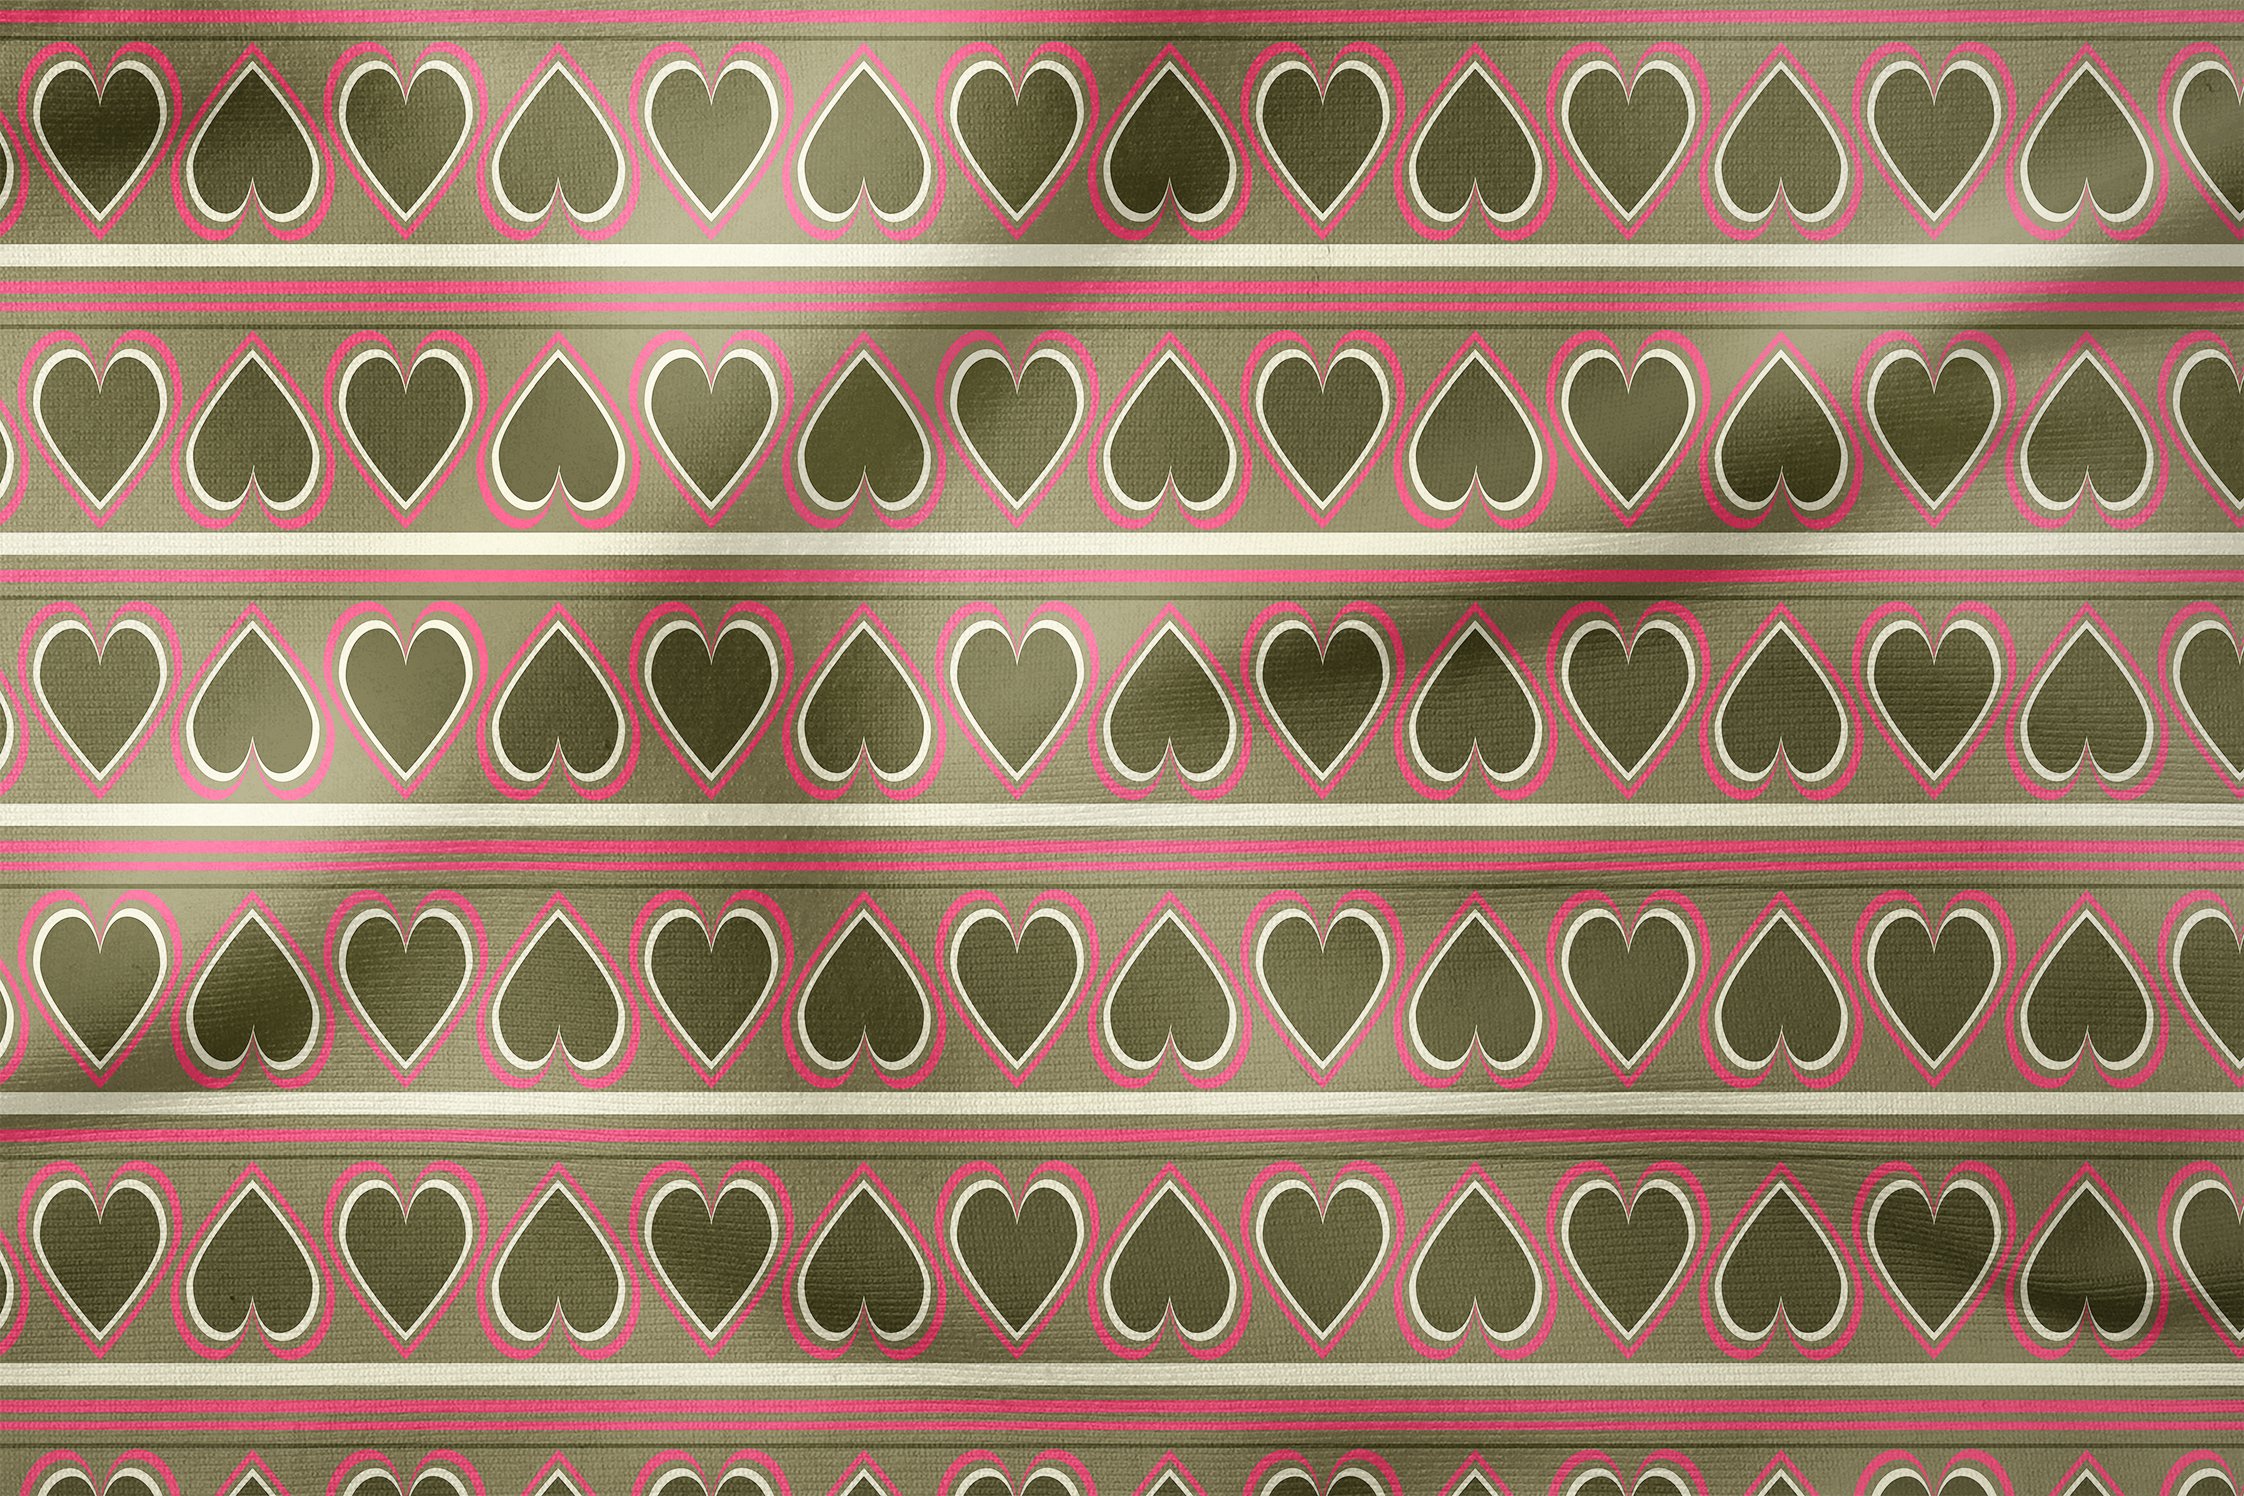 Yeşil Pembe Çizgili Kalpler Desenli Döşemelik Kumaş